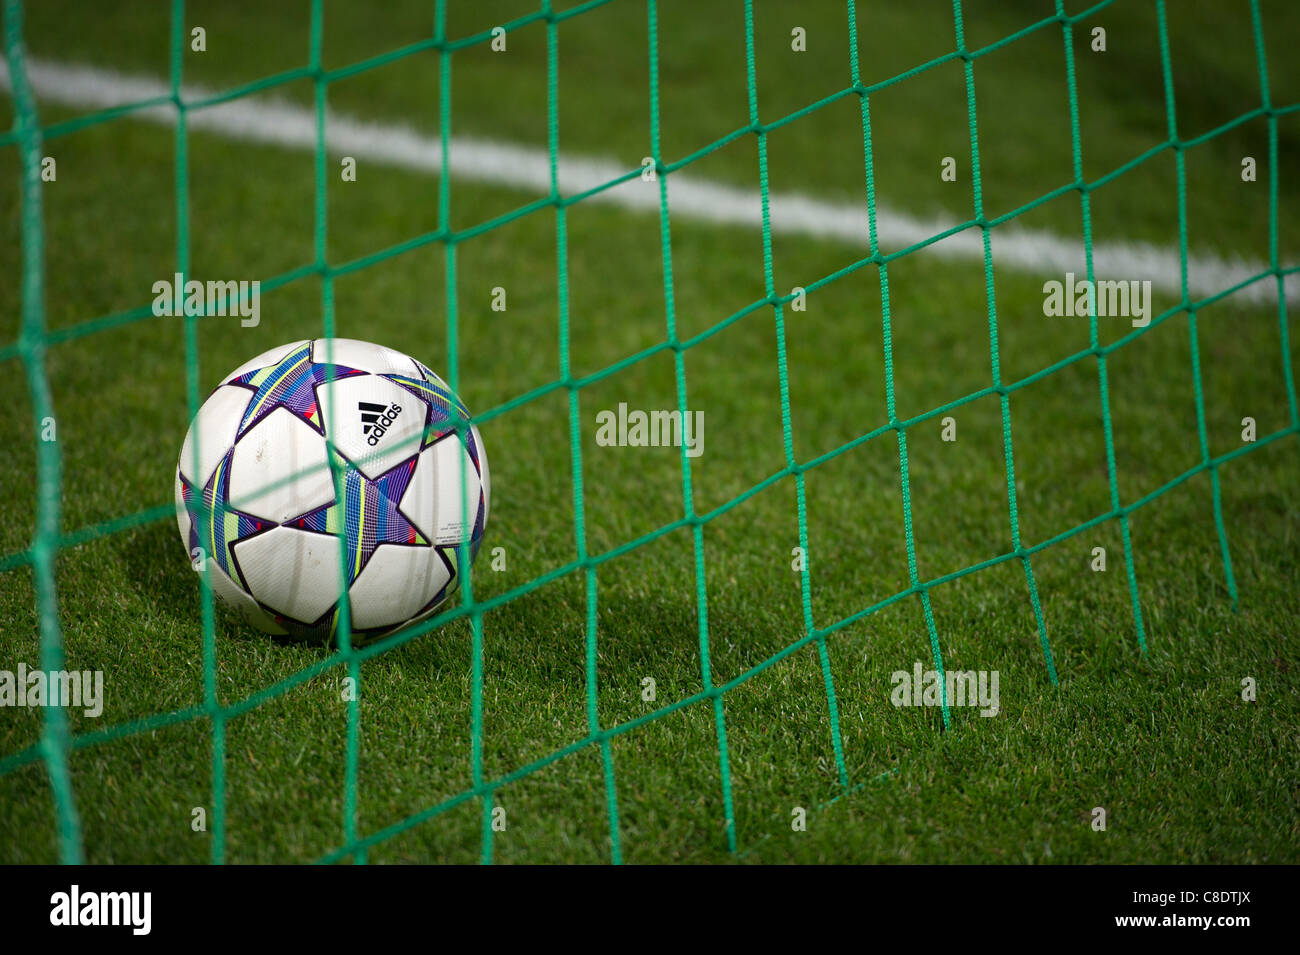 Adidas Champions League bola en la meta net y encima de la línea blanca Foto de stock